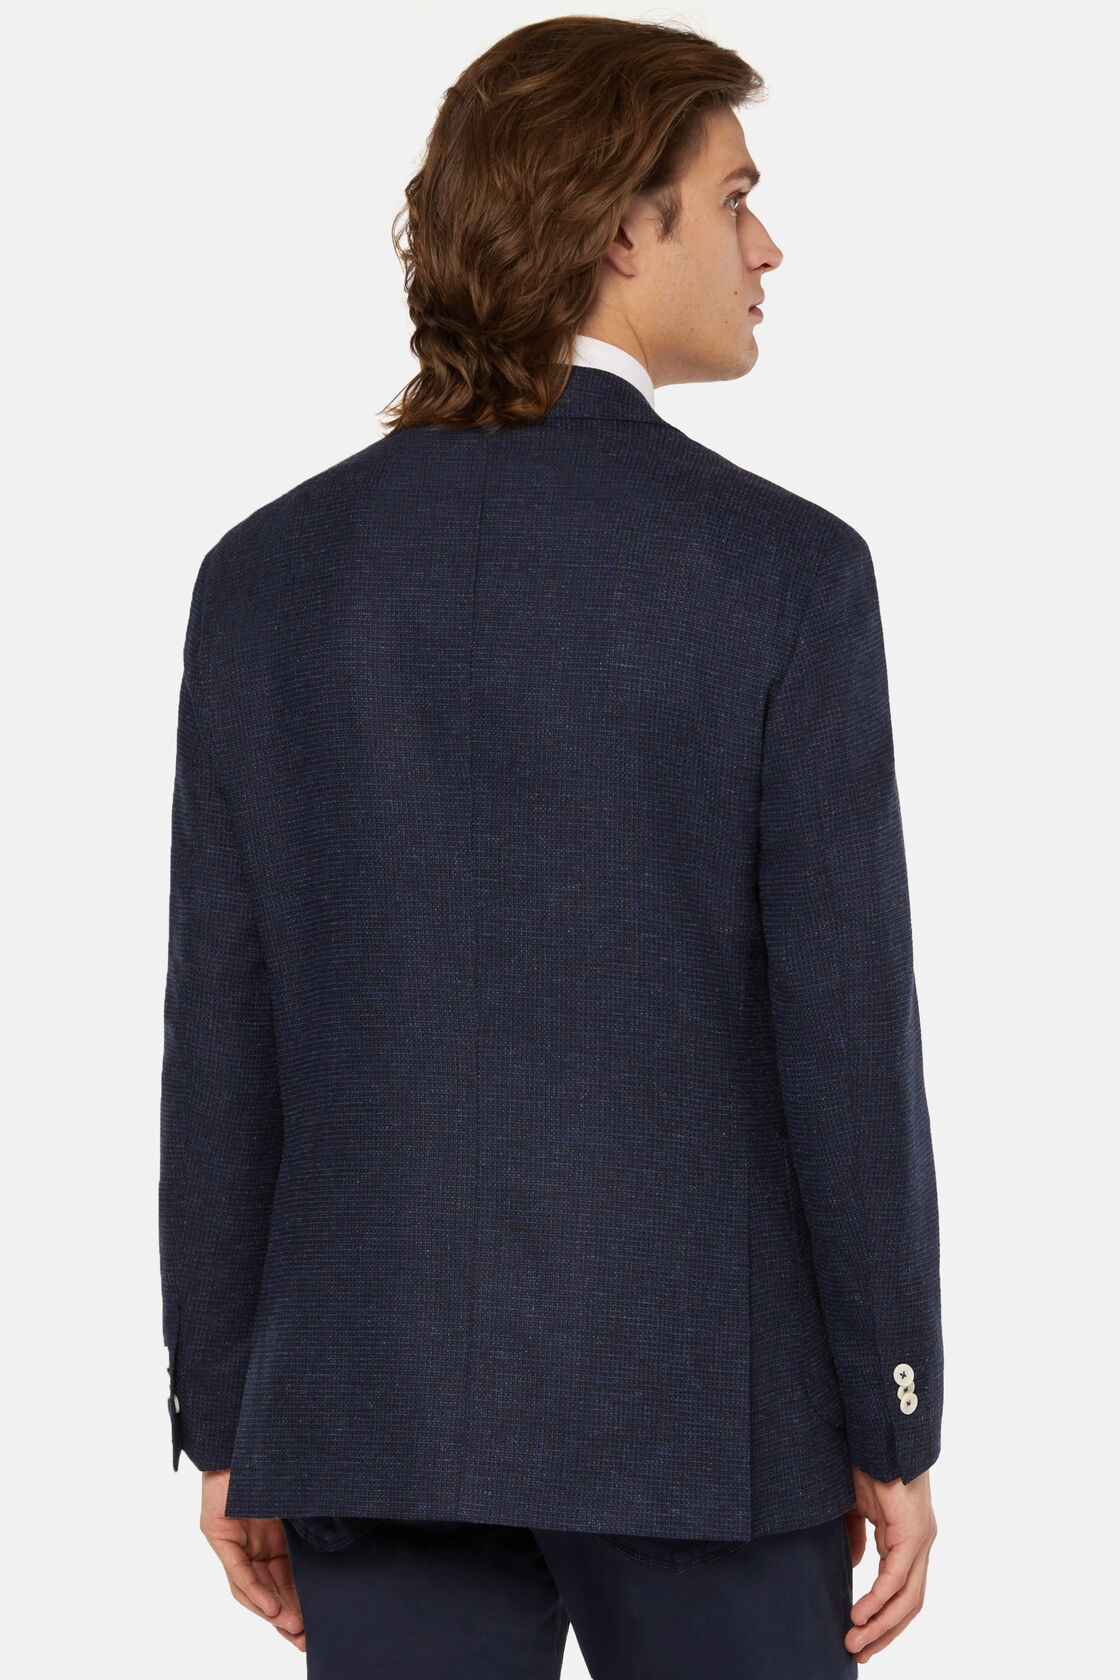 Marineblauwe blazer in stretch wol linnen, Navy blue, hi-res